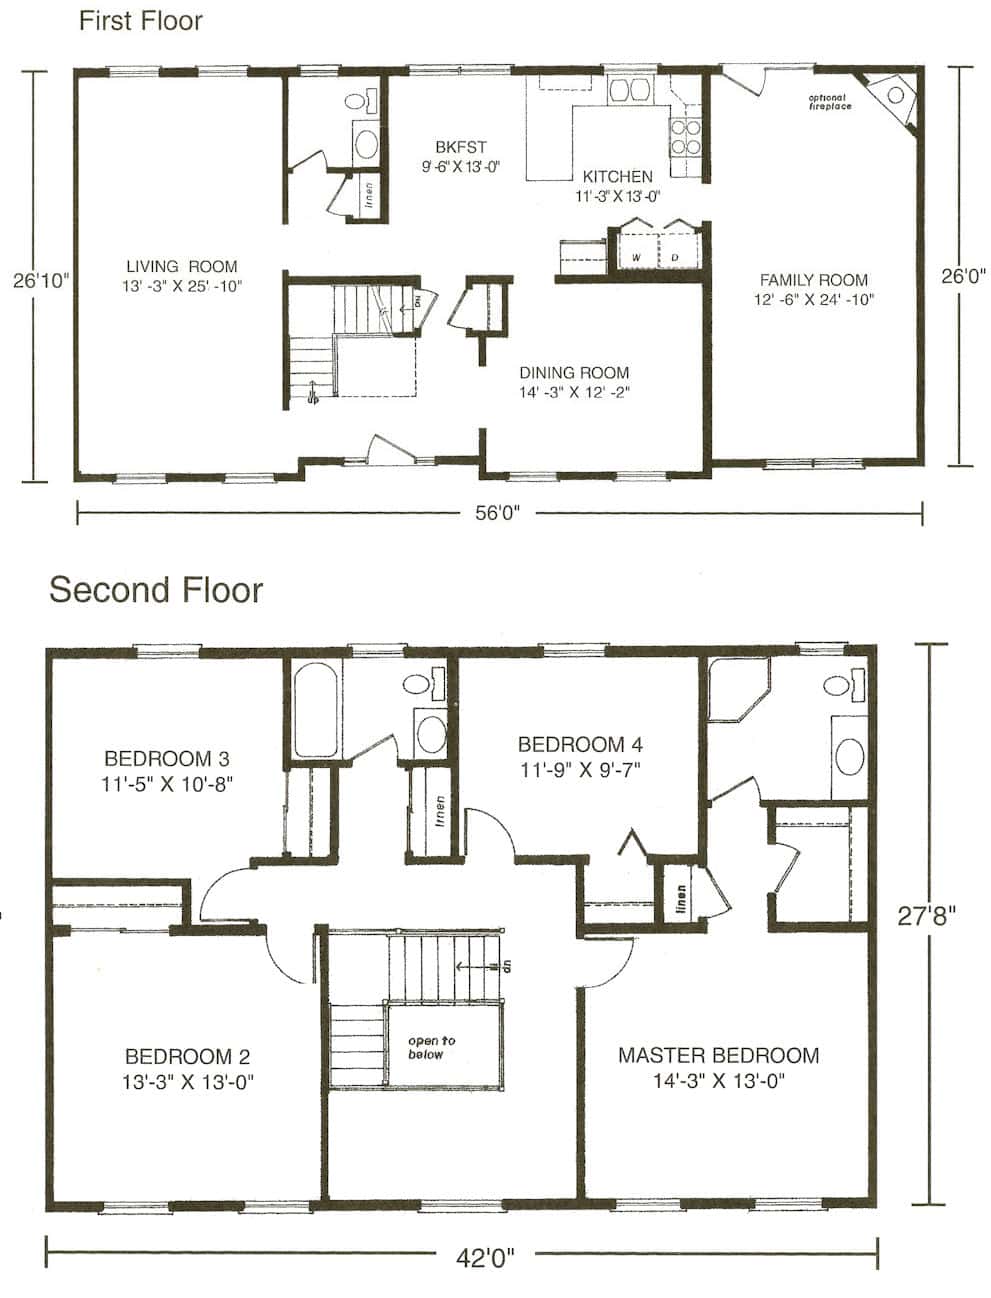 The Barrington Colonial Home Floor Plan